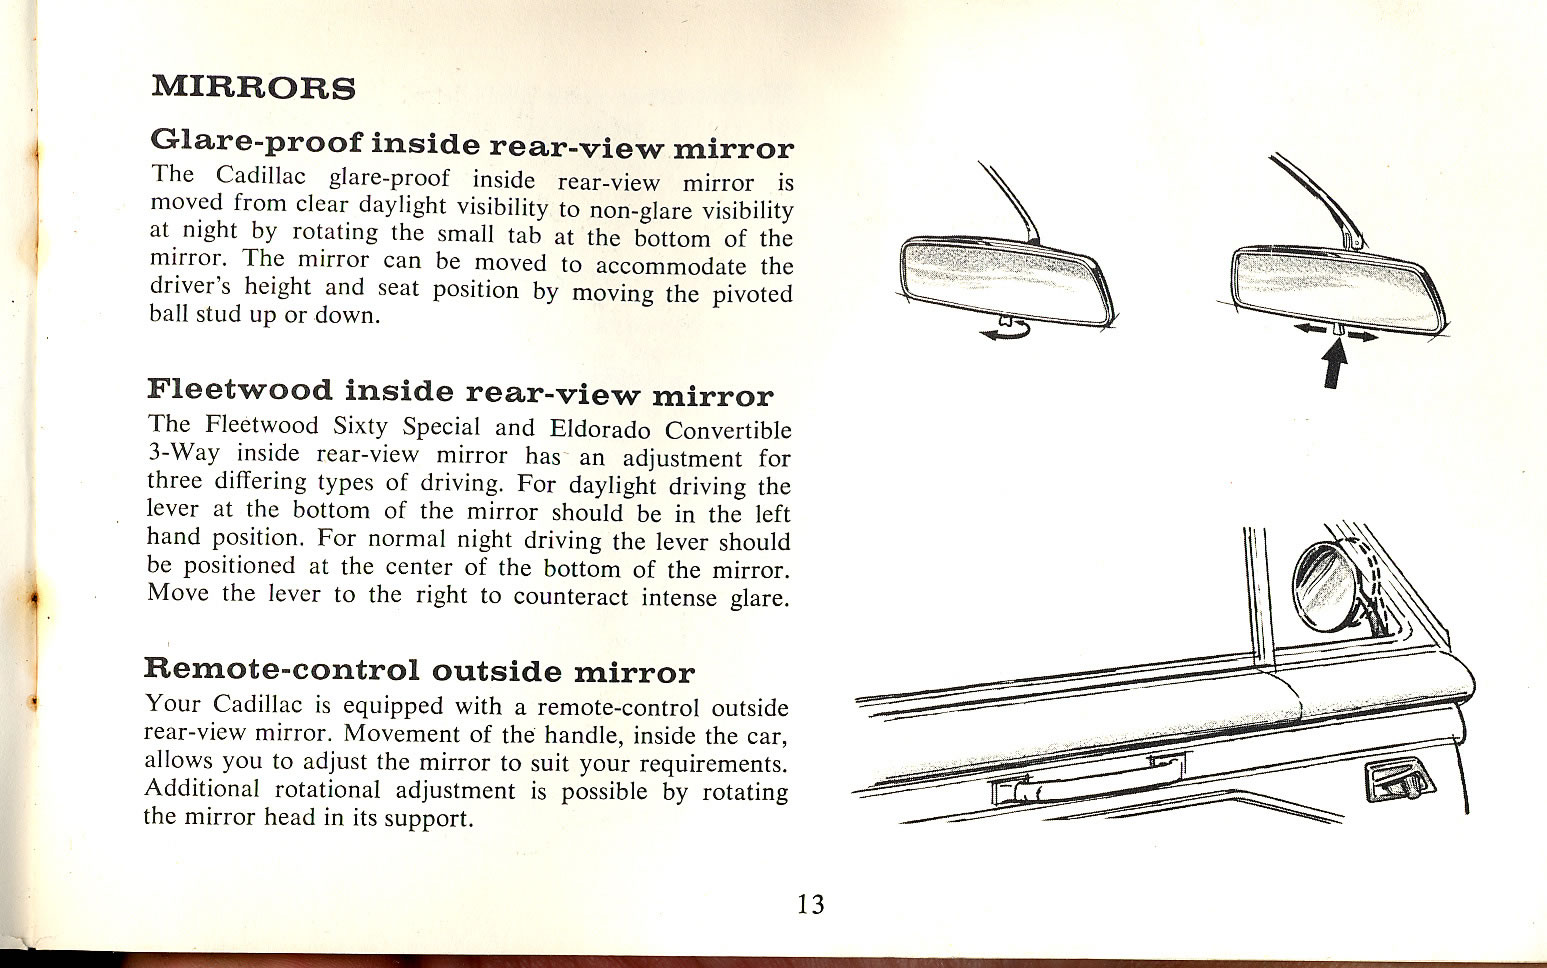 1965 Cadillac Manual-13